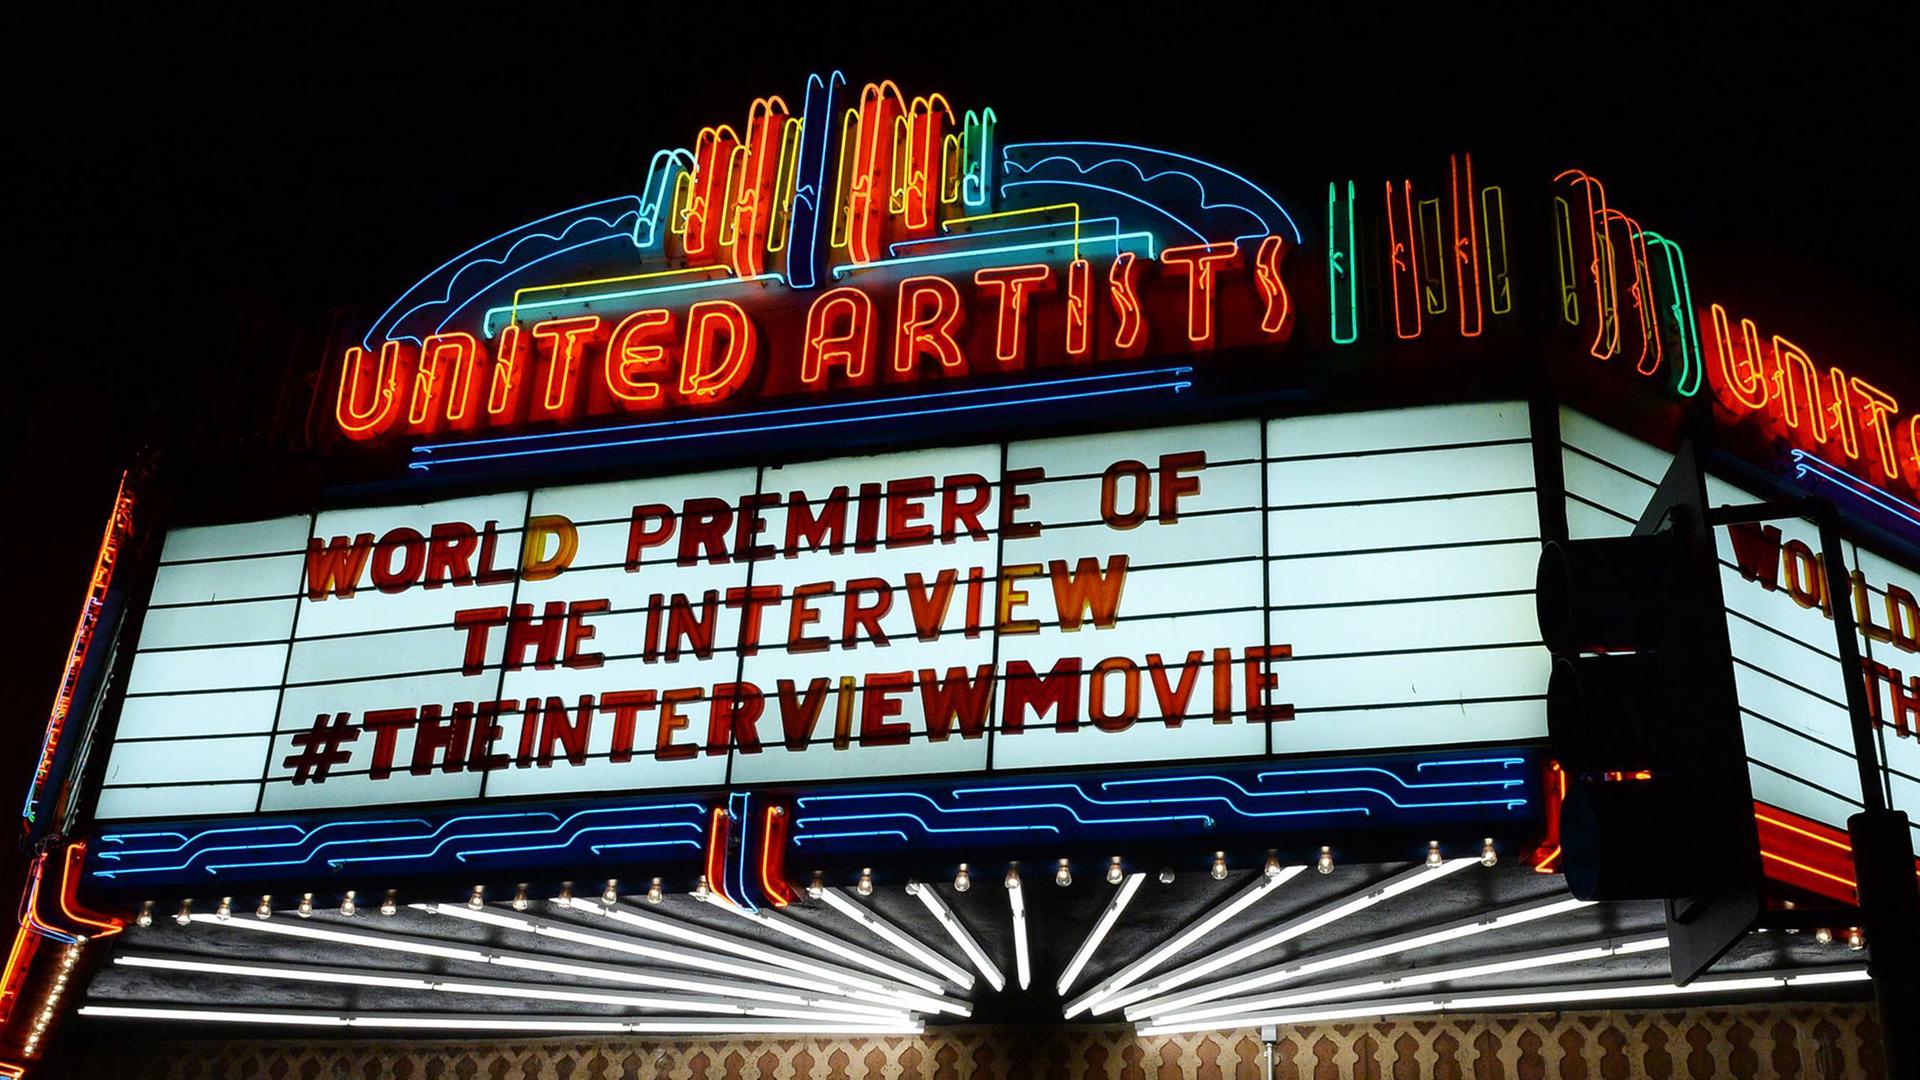 Ein Kino kündigt die Premiere von "The Interview" an.